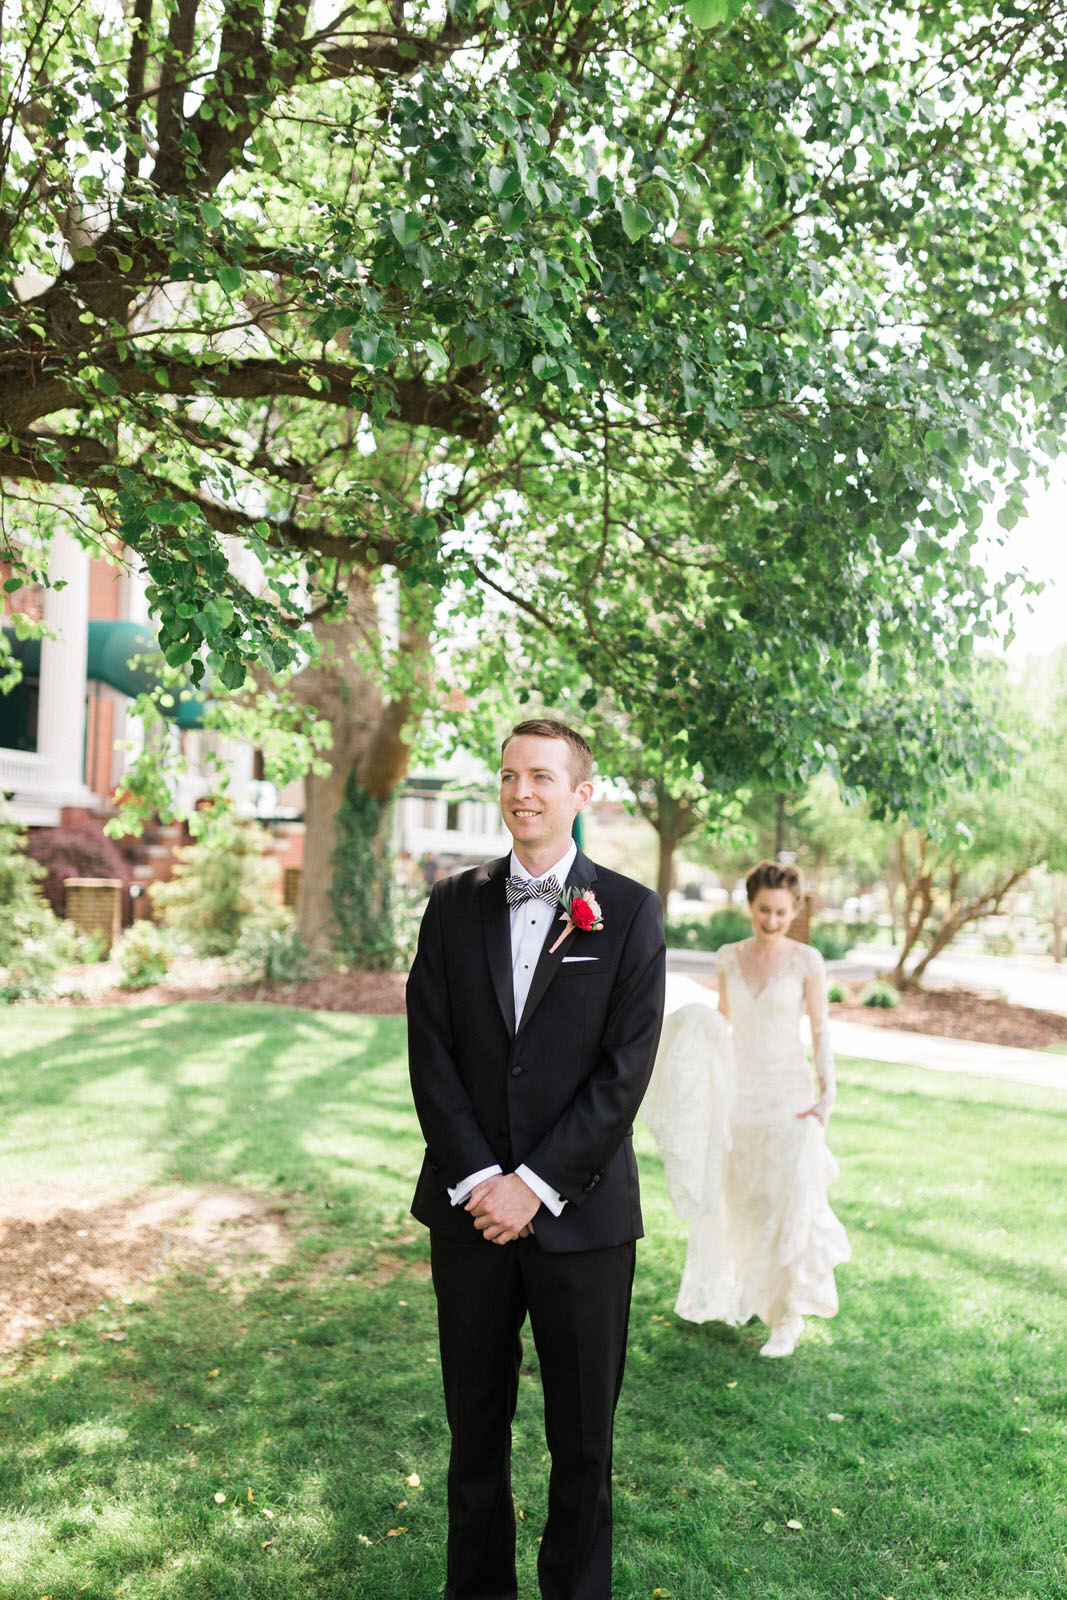 Ralph Lauren Groom's Suite Jane Austen Inspired Wedding 